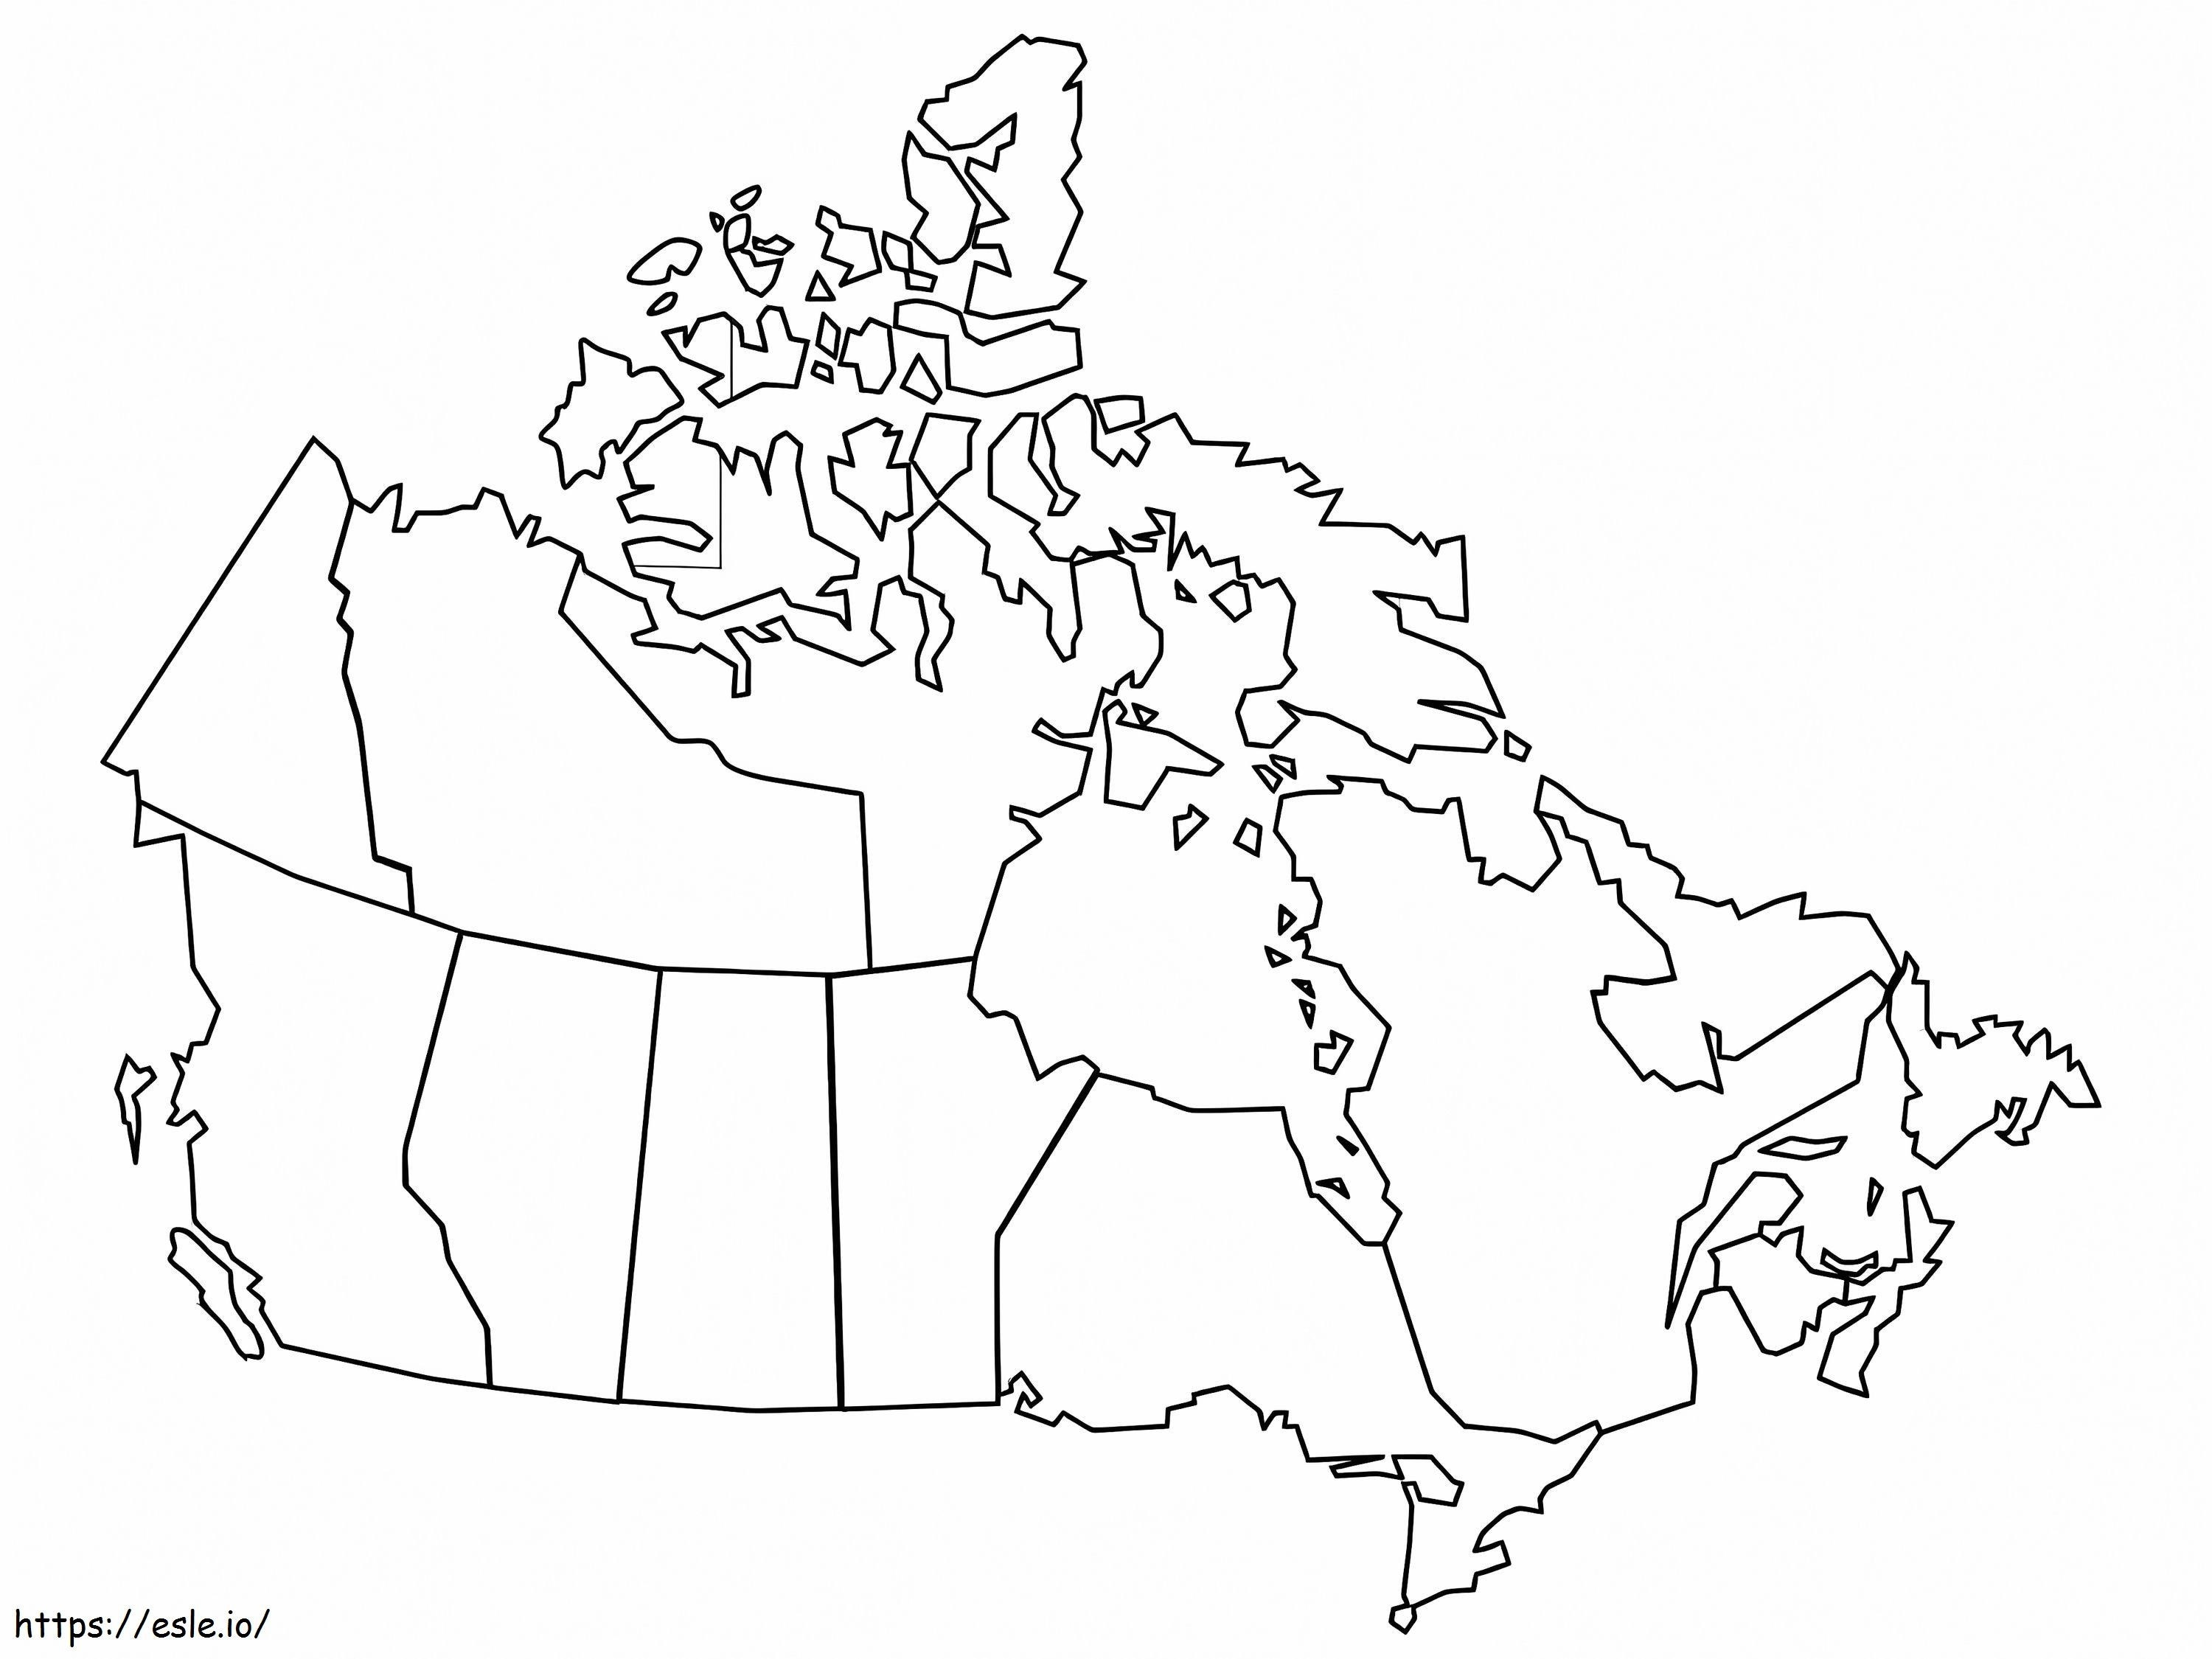 Mapa para impressão do Canadá para colorir